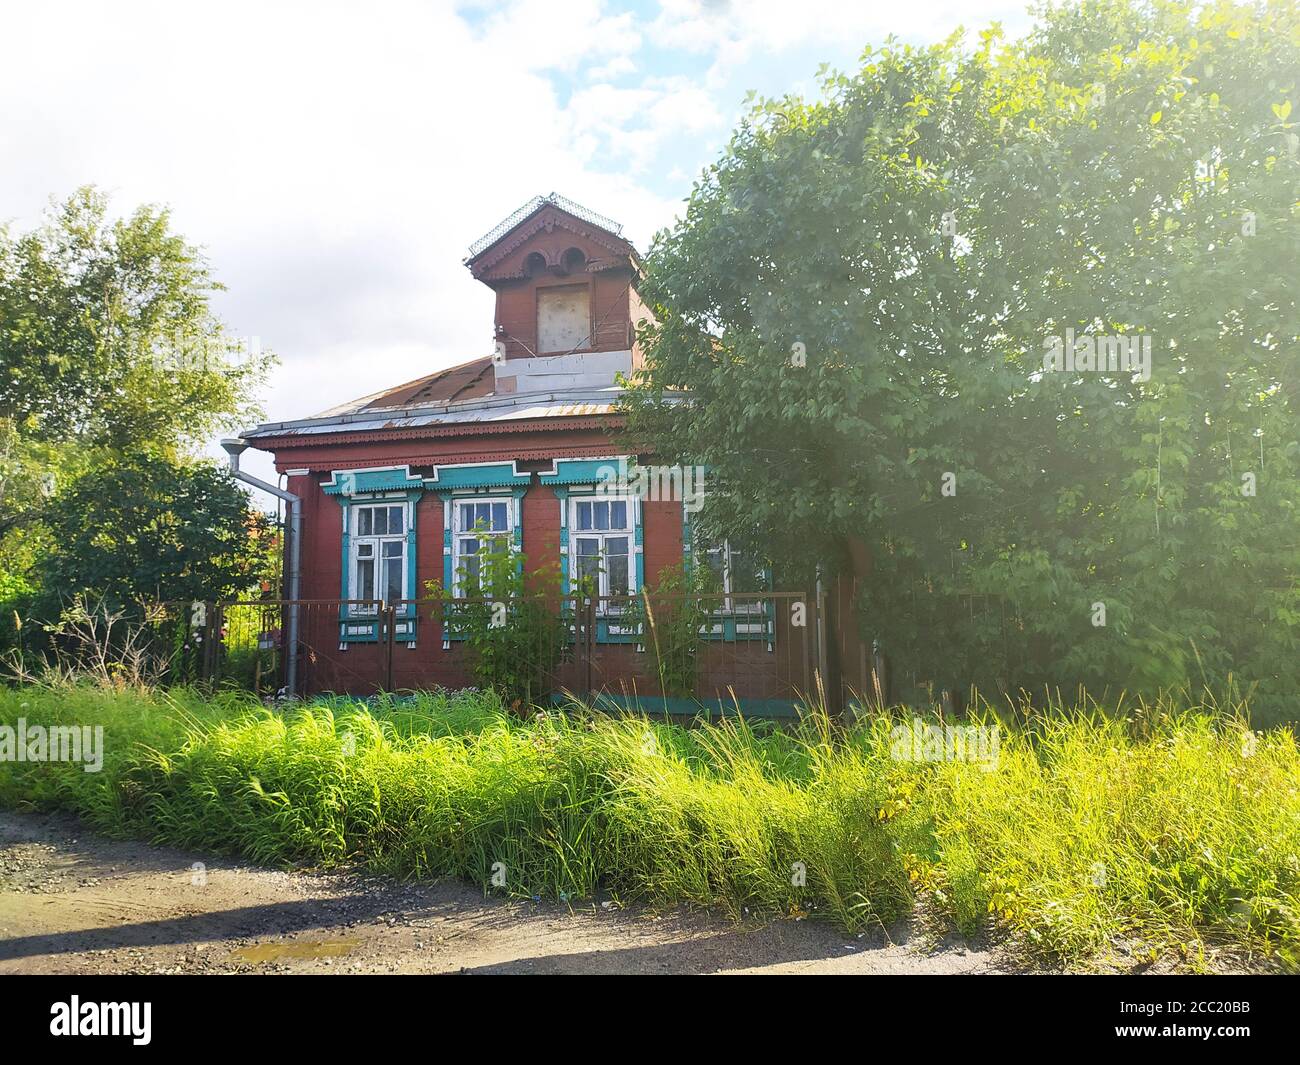 maison rustique en bois avec mezzanine sur une pelouse ensoleillée. Banque D'Images